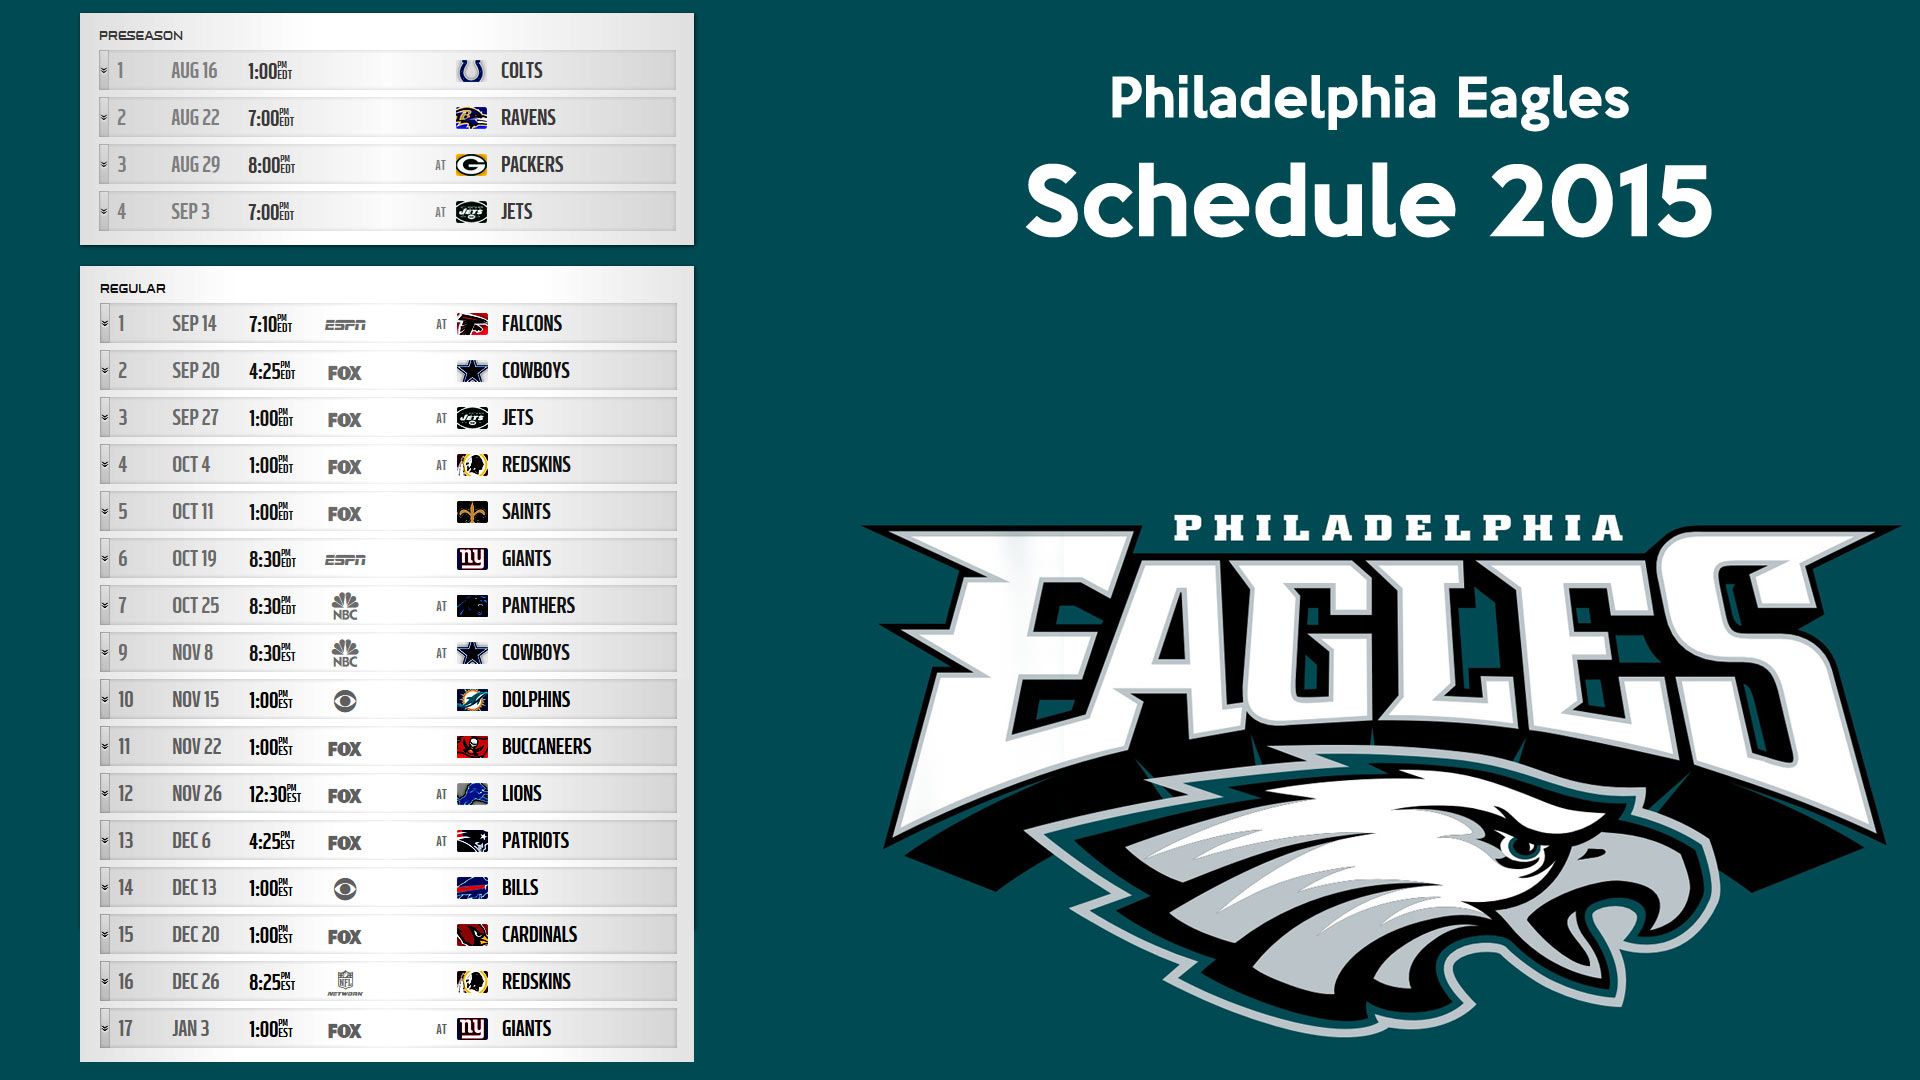 Philadelphia Eagles schedule 2015 wallpaper – Free full hd ...